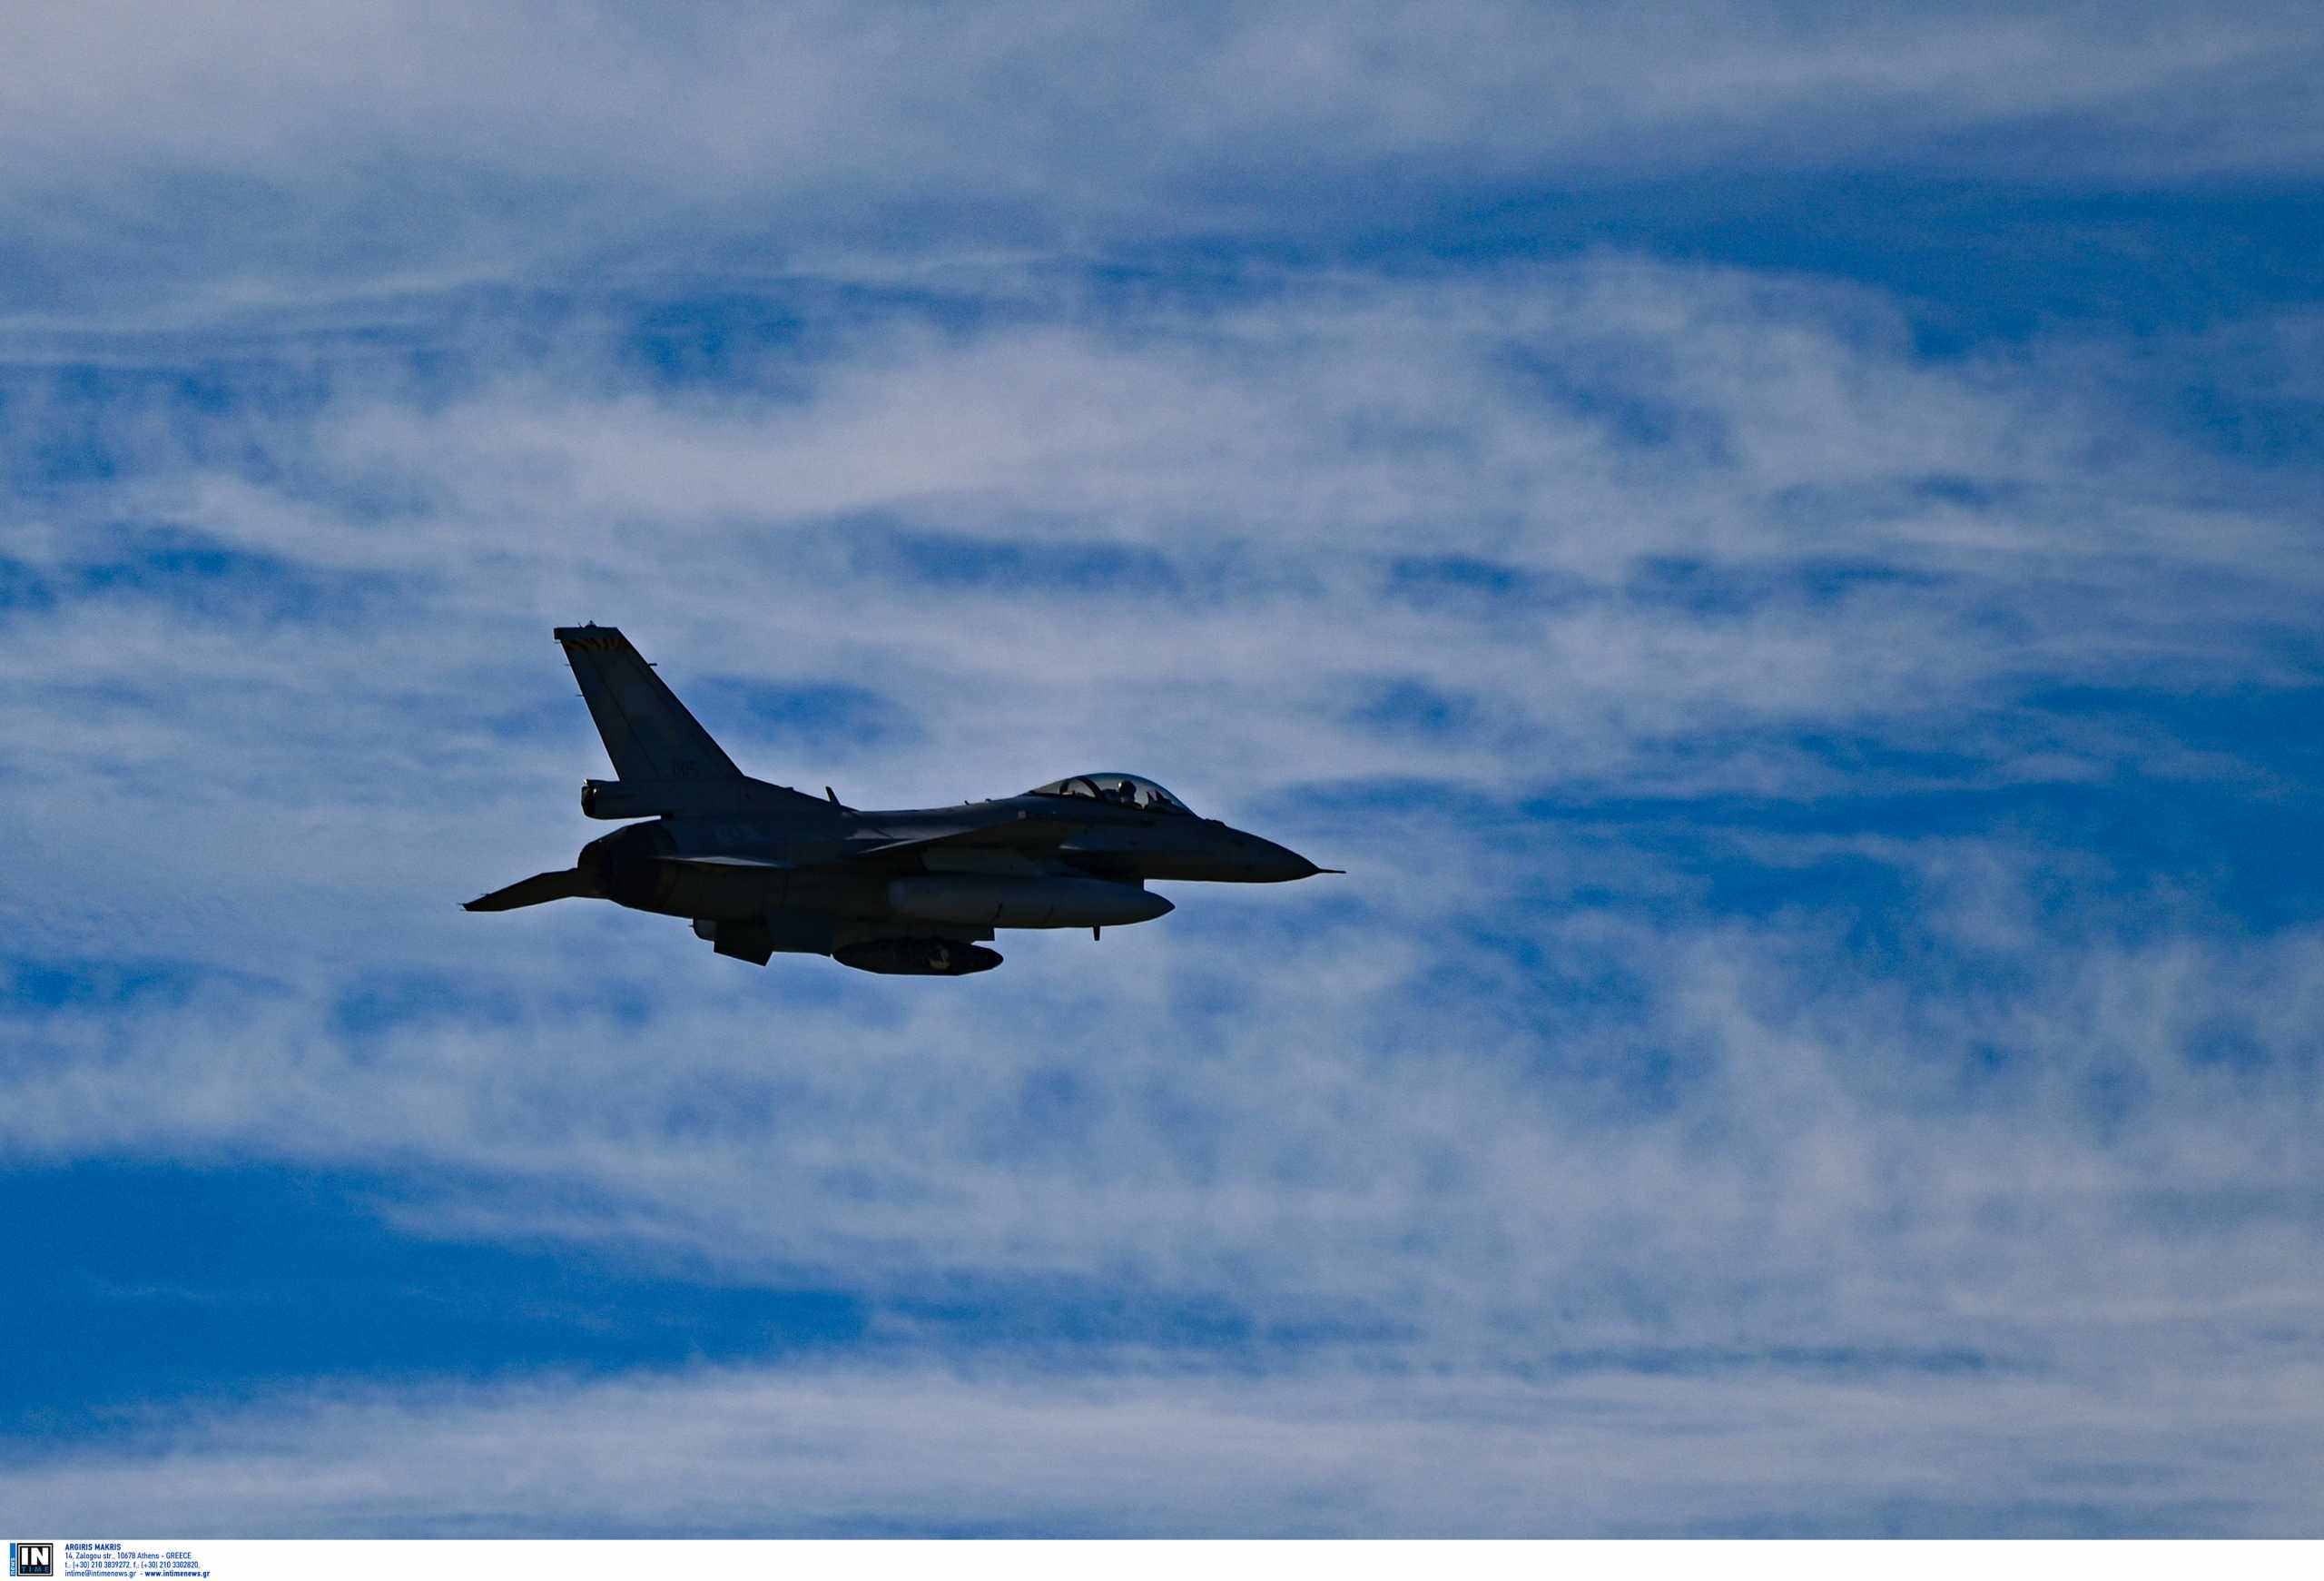 Τουρκικά F-16: Πώς ερμηνεύει η Αθήνα τις διαρροές ότι οι ΗΠΑ προωθούν την αναβάθμισή τους